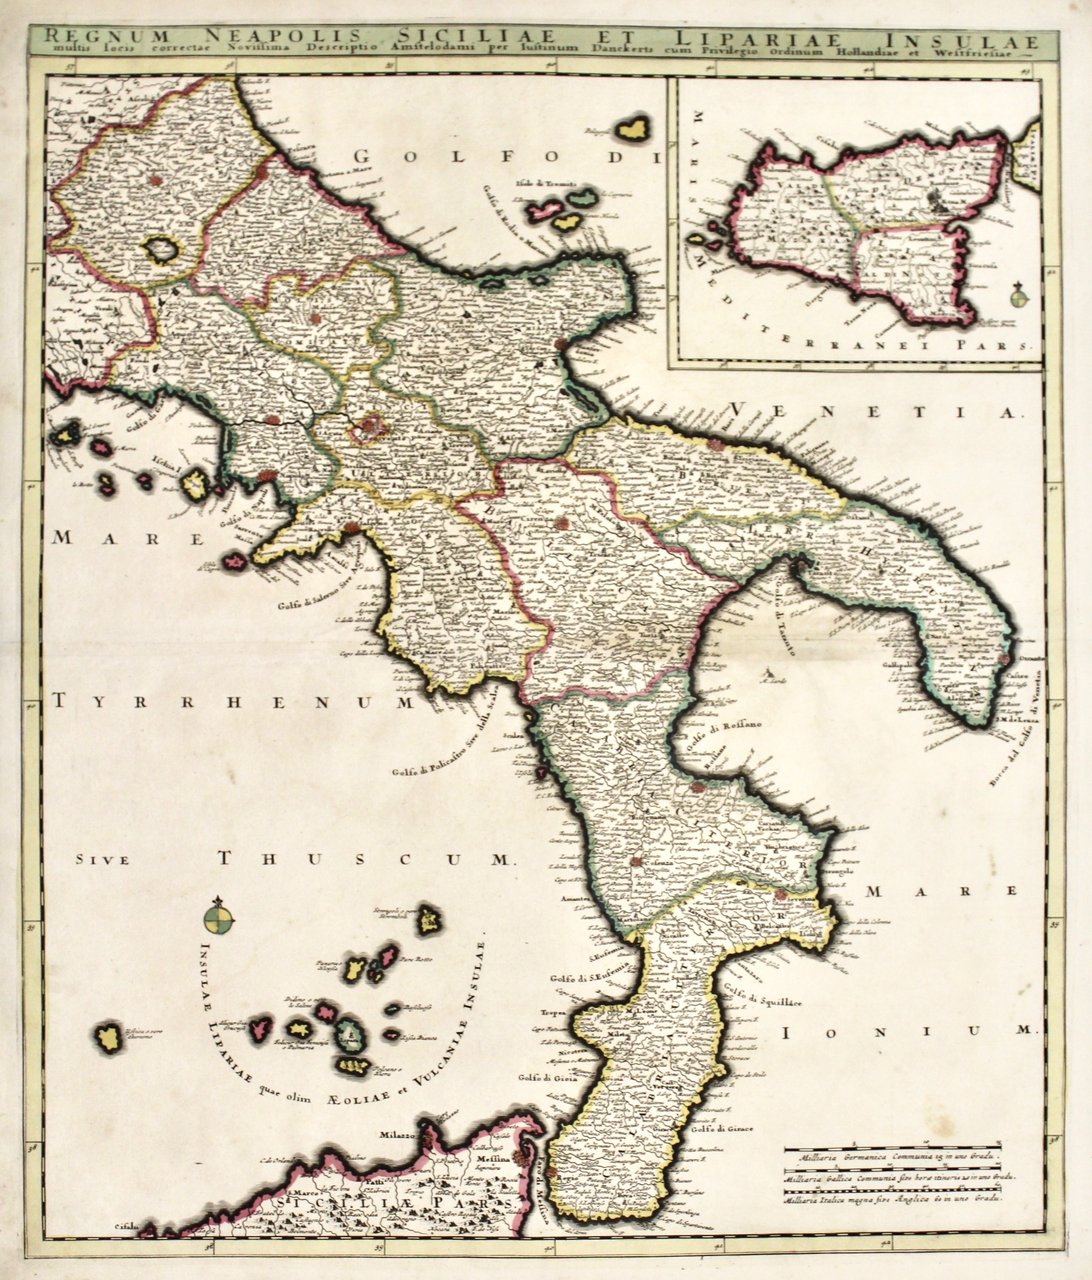 Regnum Neapolis Siciliae et Lipariae Insulae multis locis correctae novissima …